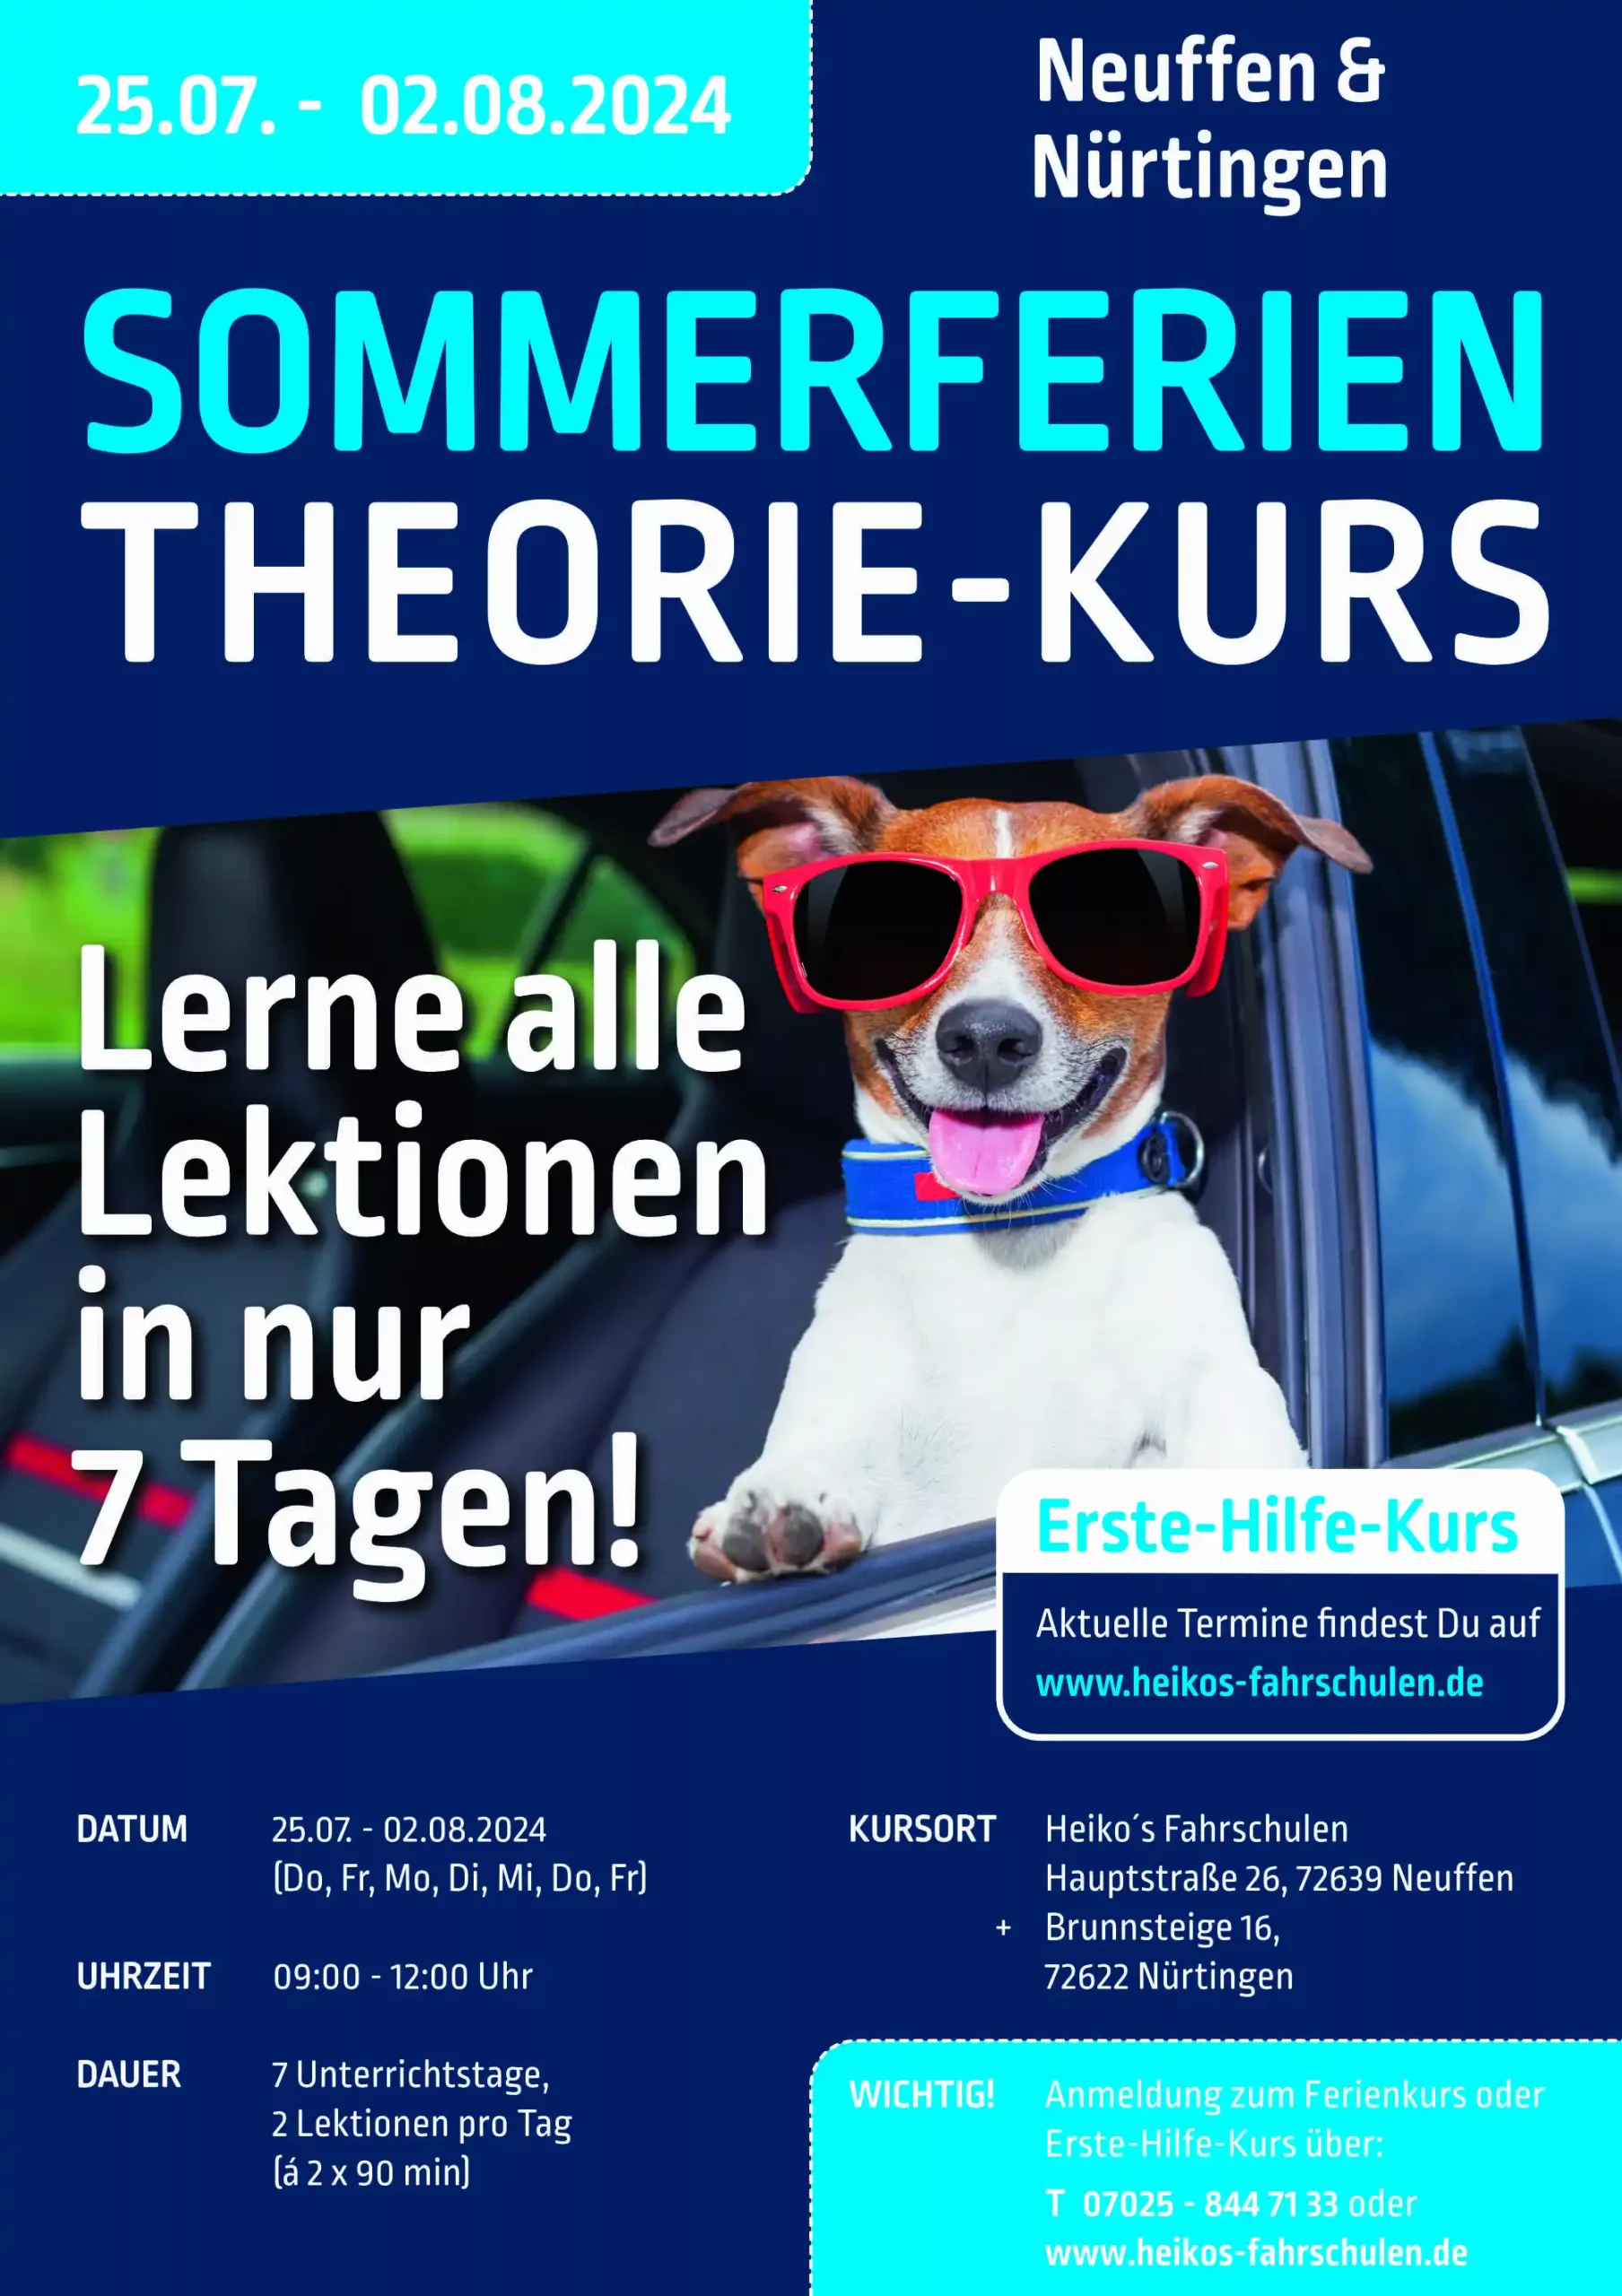 sommerferienkurs neuffen 2024-theorie kurs-heikos fahrschule-Sommerferienkurs Nürtingen Filiale